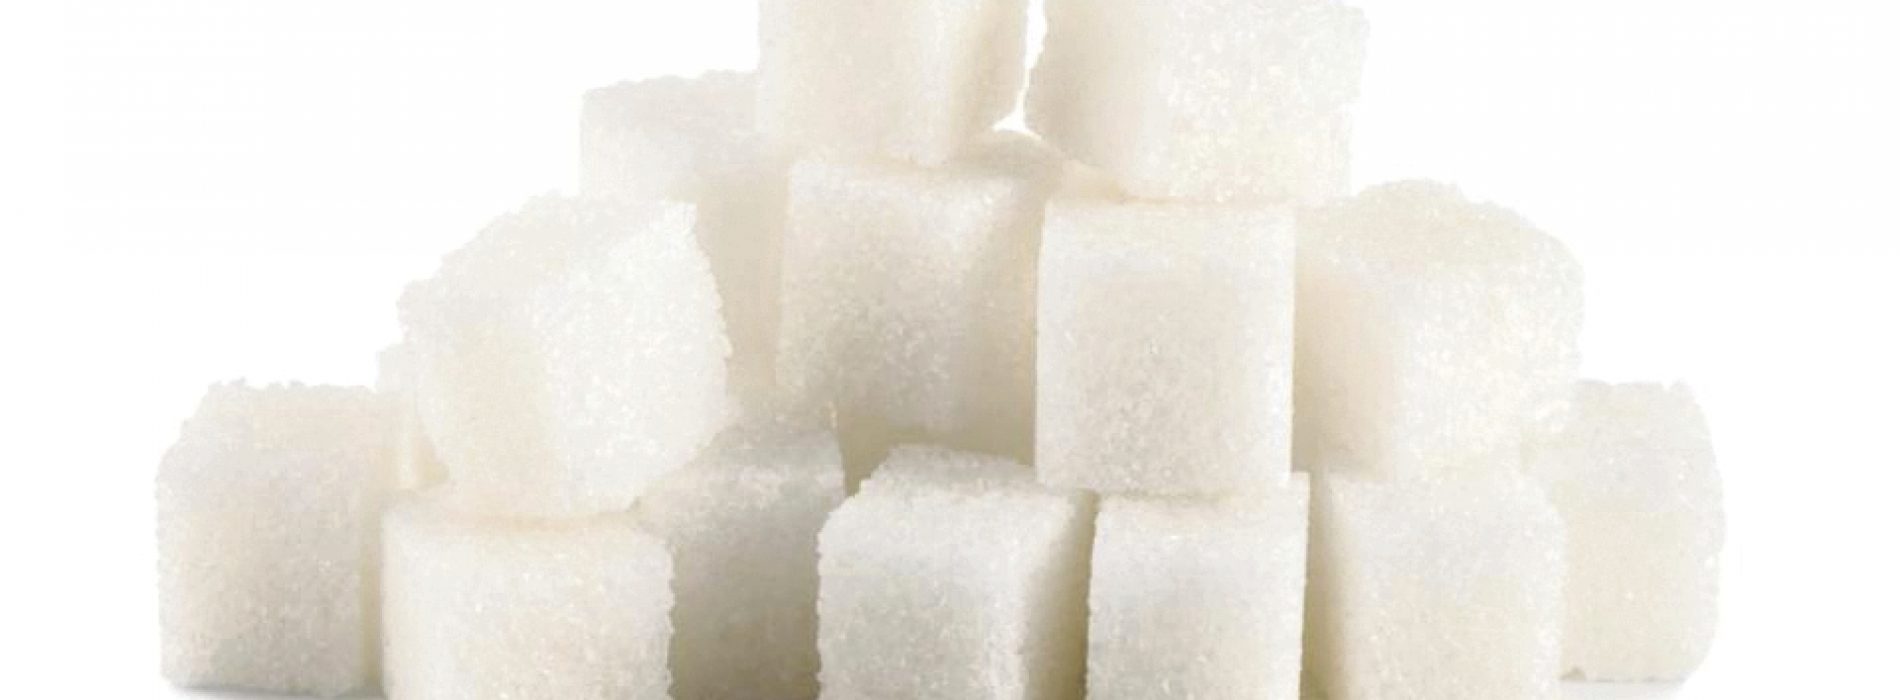 Suiker maakt kanker agressiever